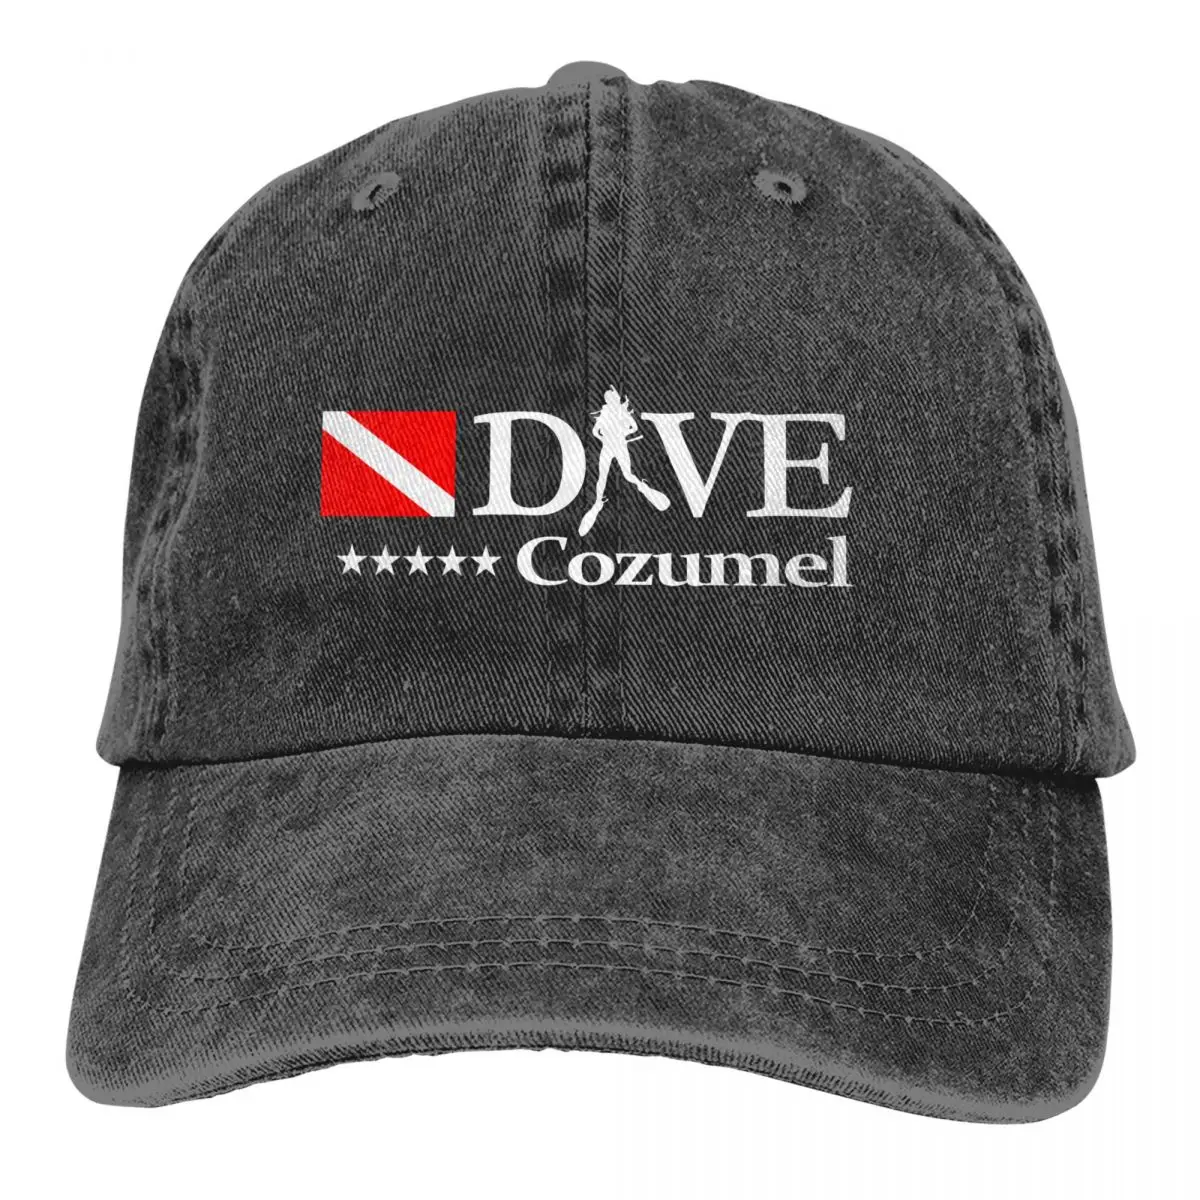 

Dive Scuba Diving Multicolor Hat Peaked Men Women's Cowboy Cap Cozumel Baseball Caps Personalized Visor Protect Hats